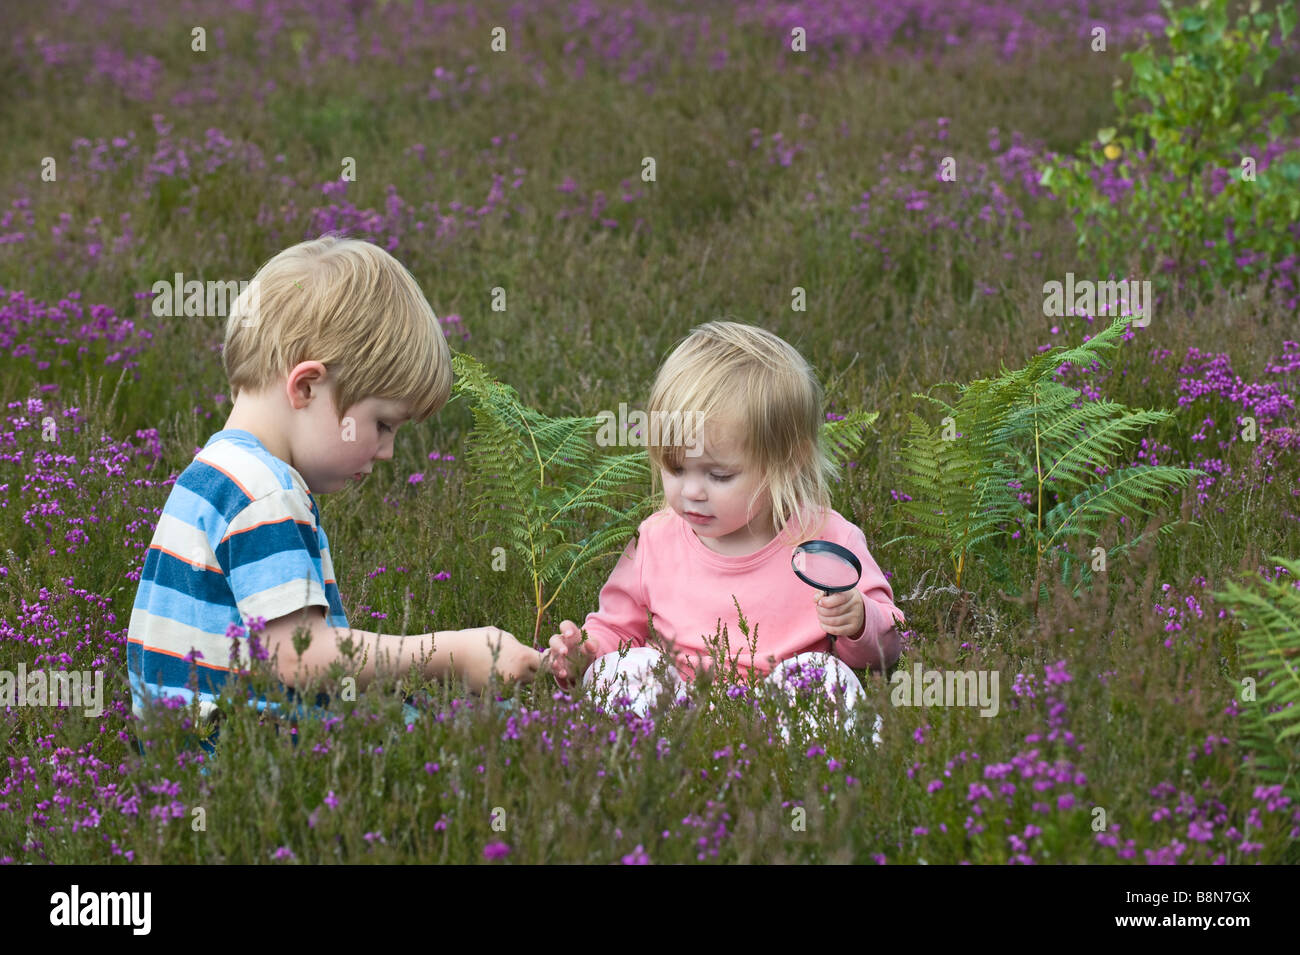 Garçon et fille 4 2 loupe à insectes sur la santé à North Norfolk Juillet Banque D'Images